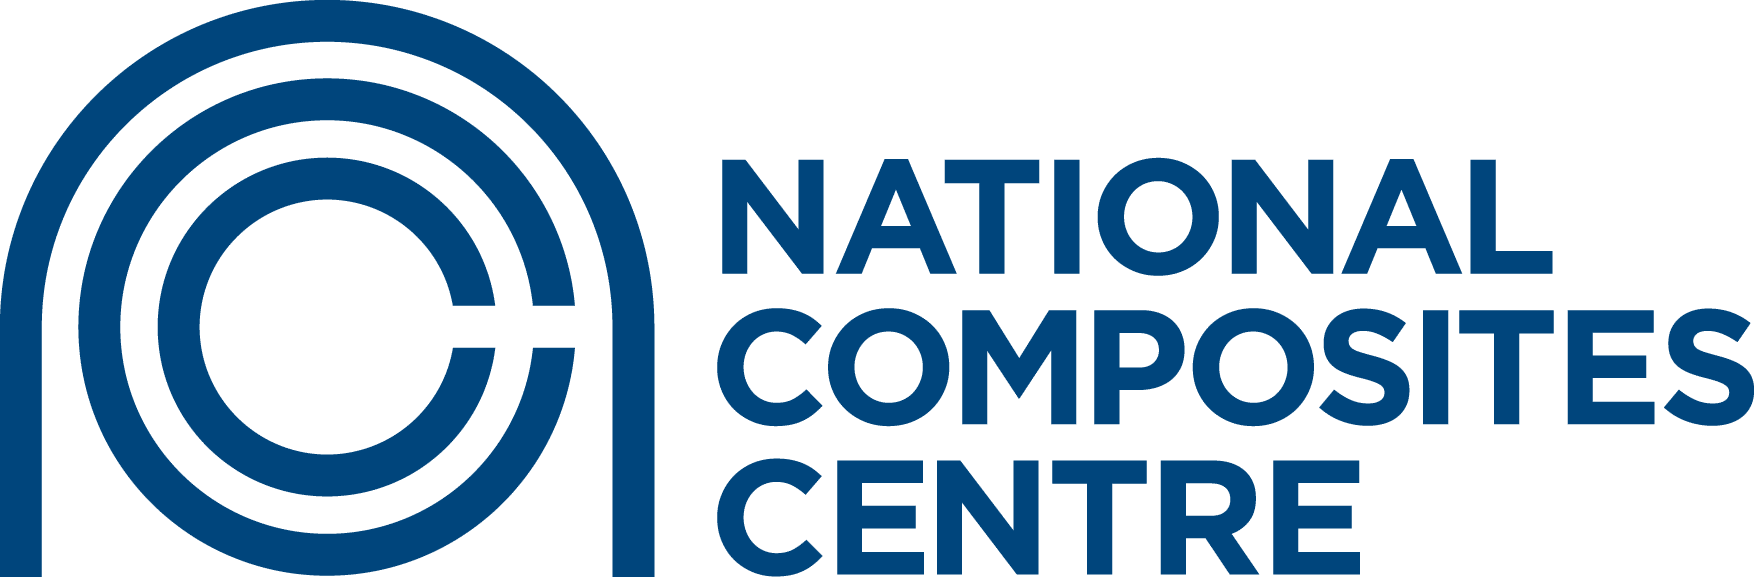 National Composites Center logo